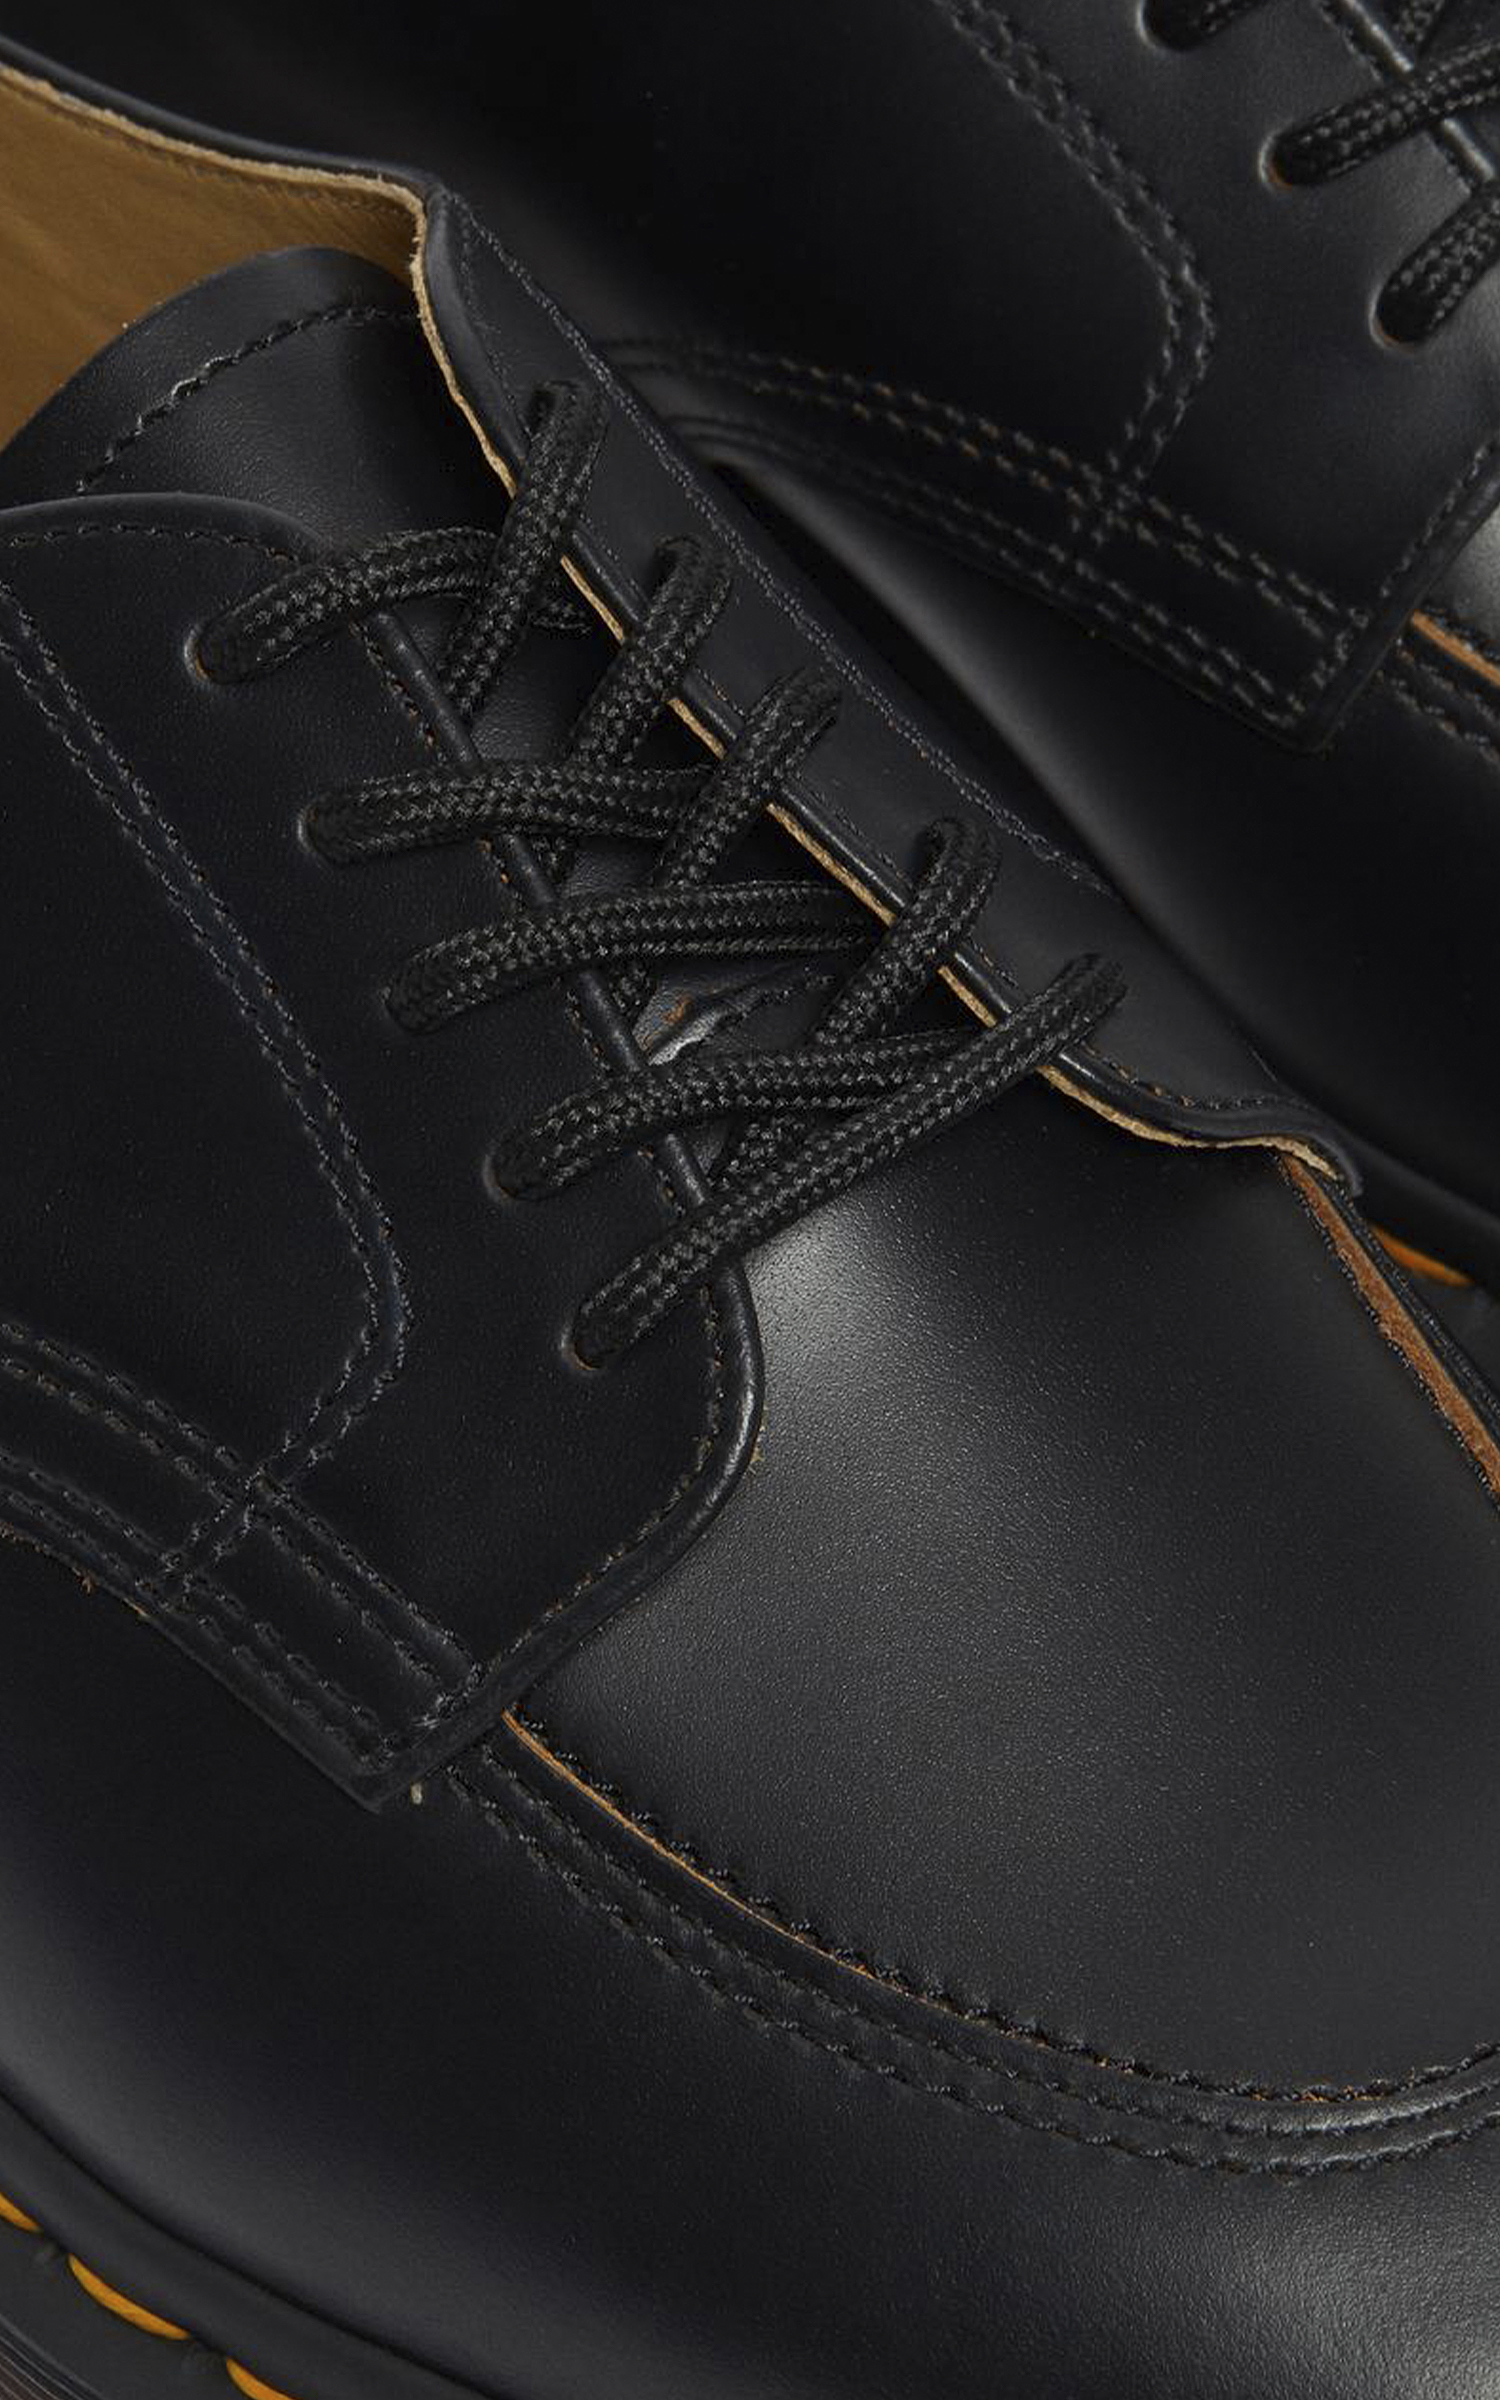 Dr. Martens 2046 Vintage Smooth Leather Black | Cultizm